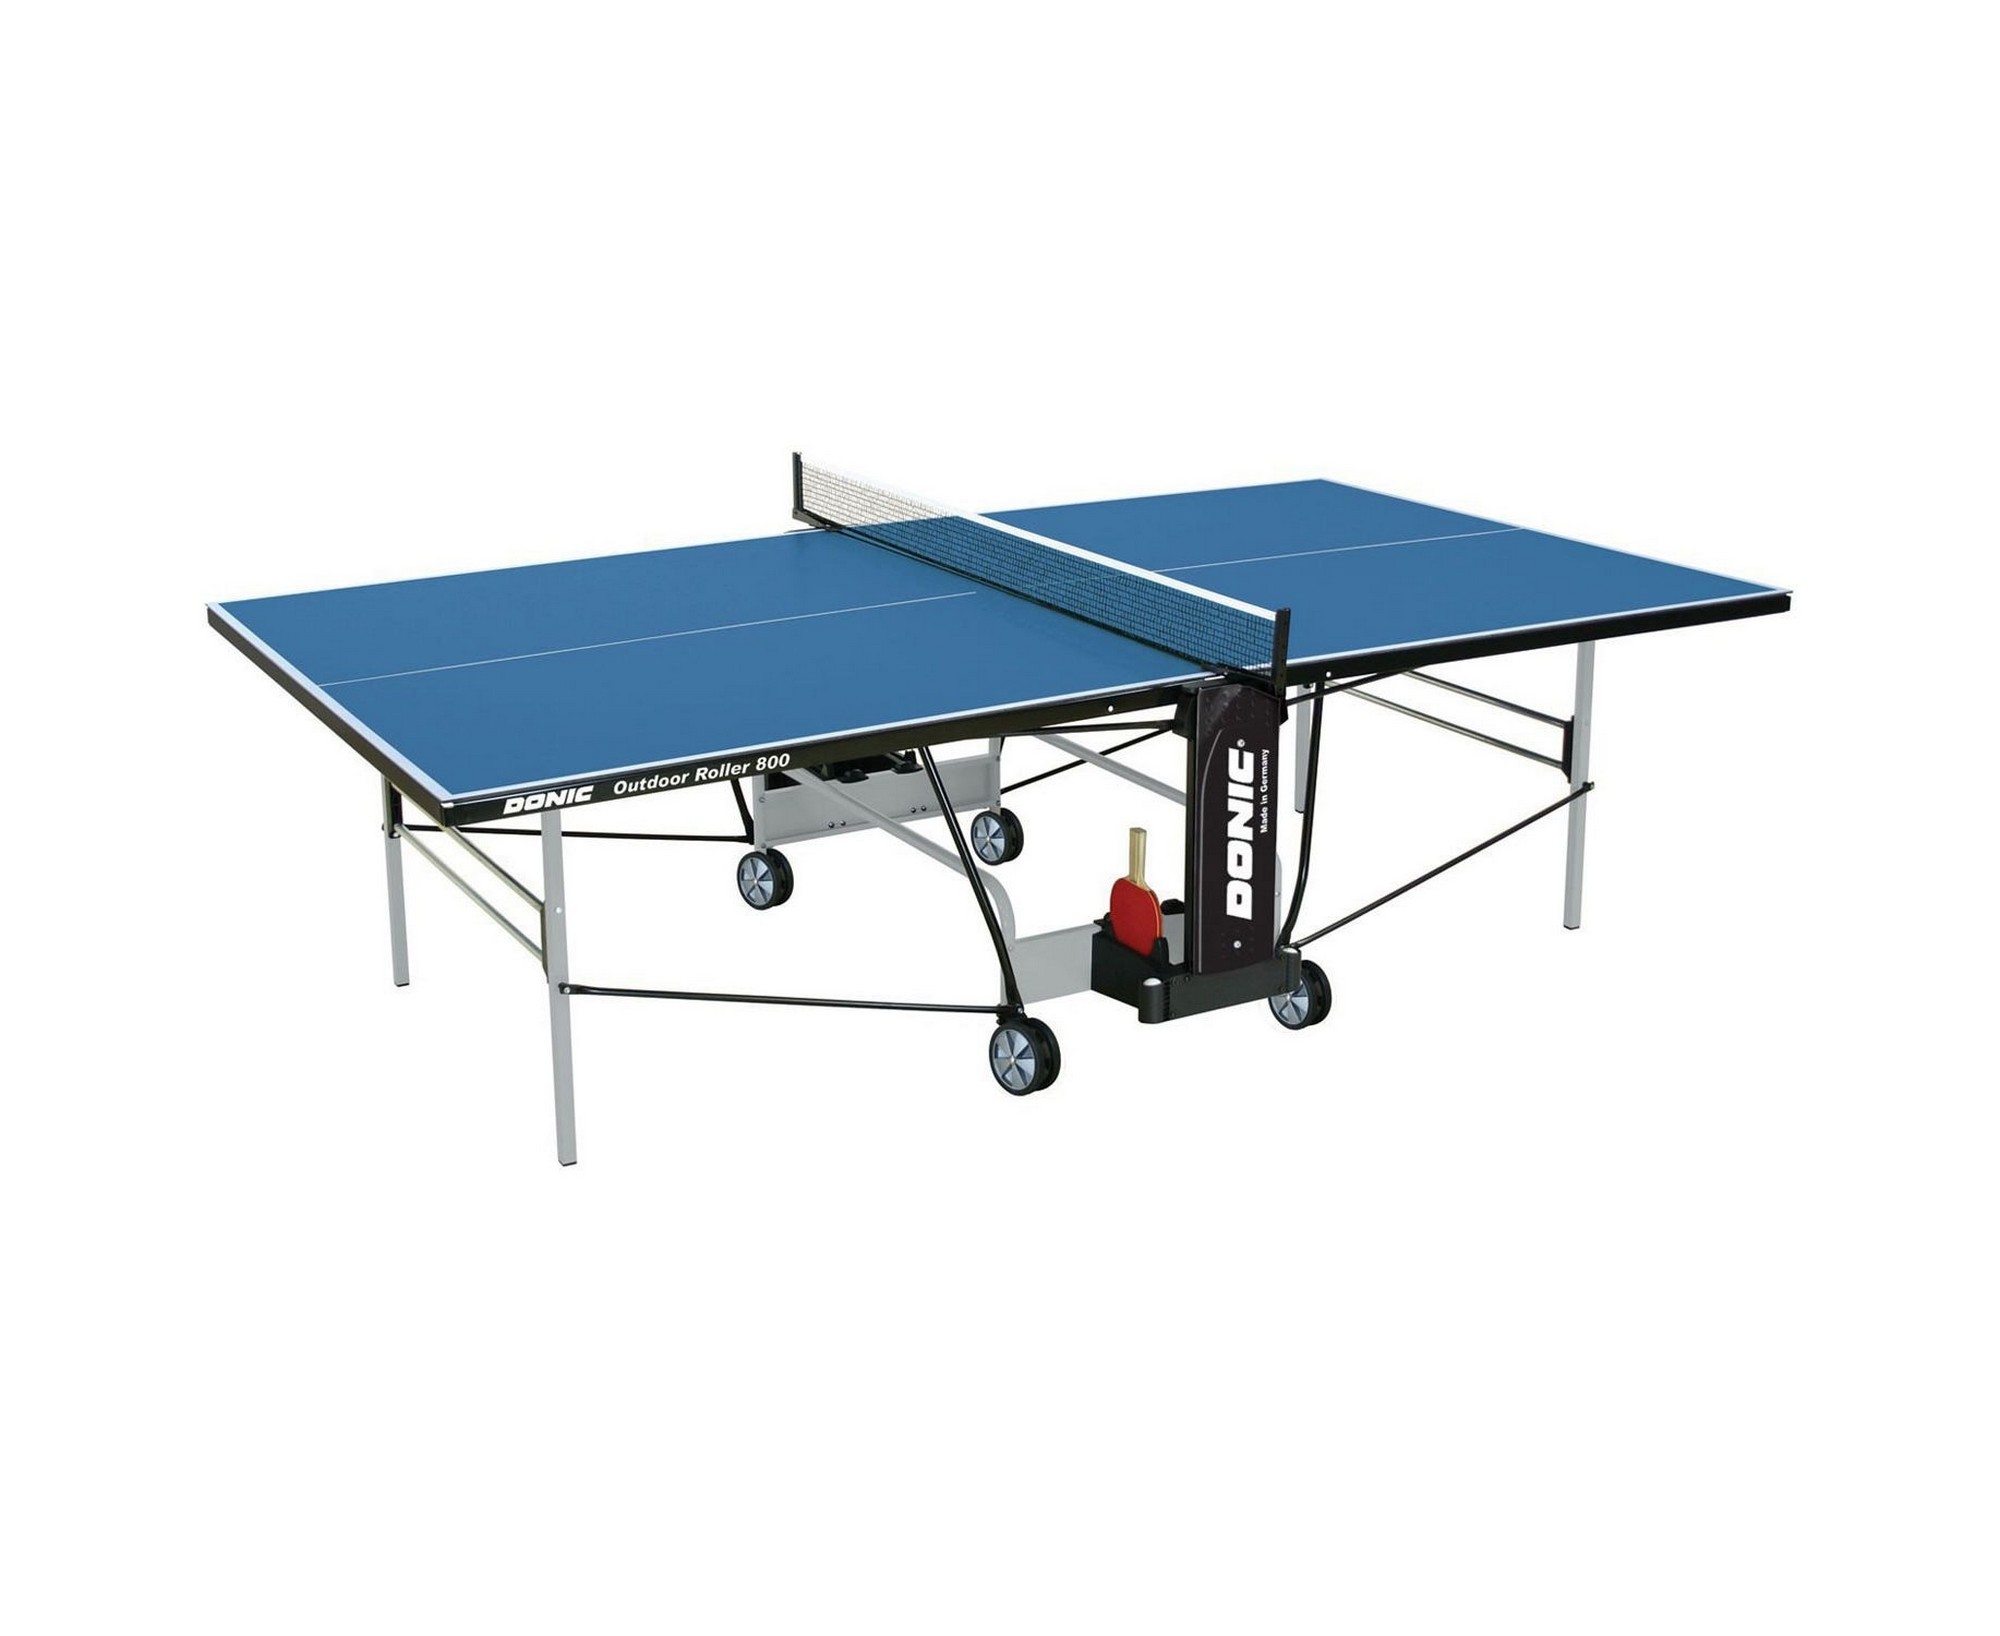 Теннисный стол Donic Outdoor Roller 800-5 230296-B синий 2000_1636